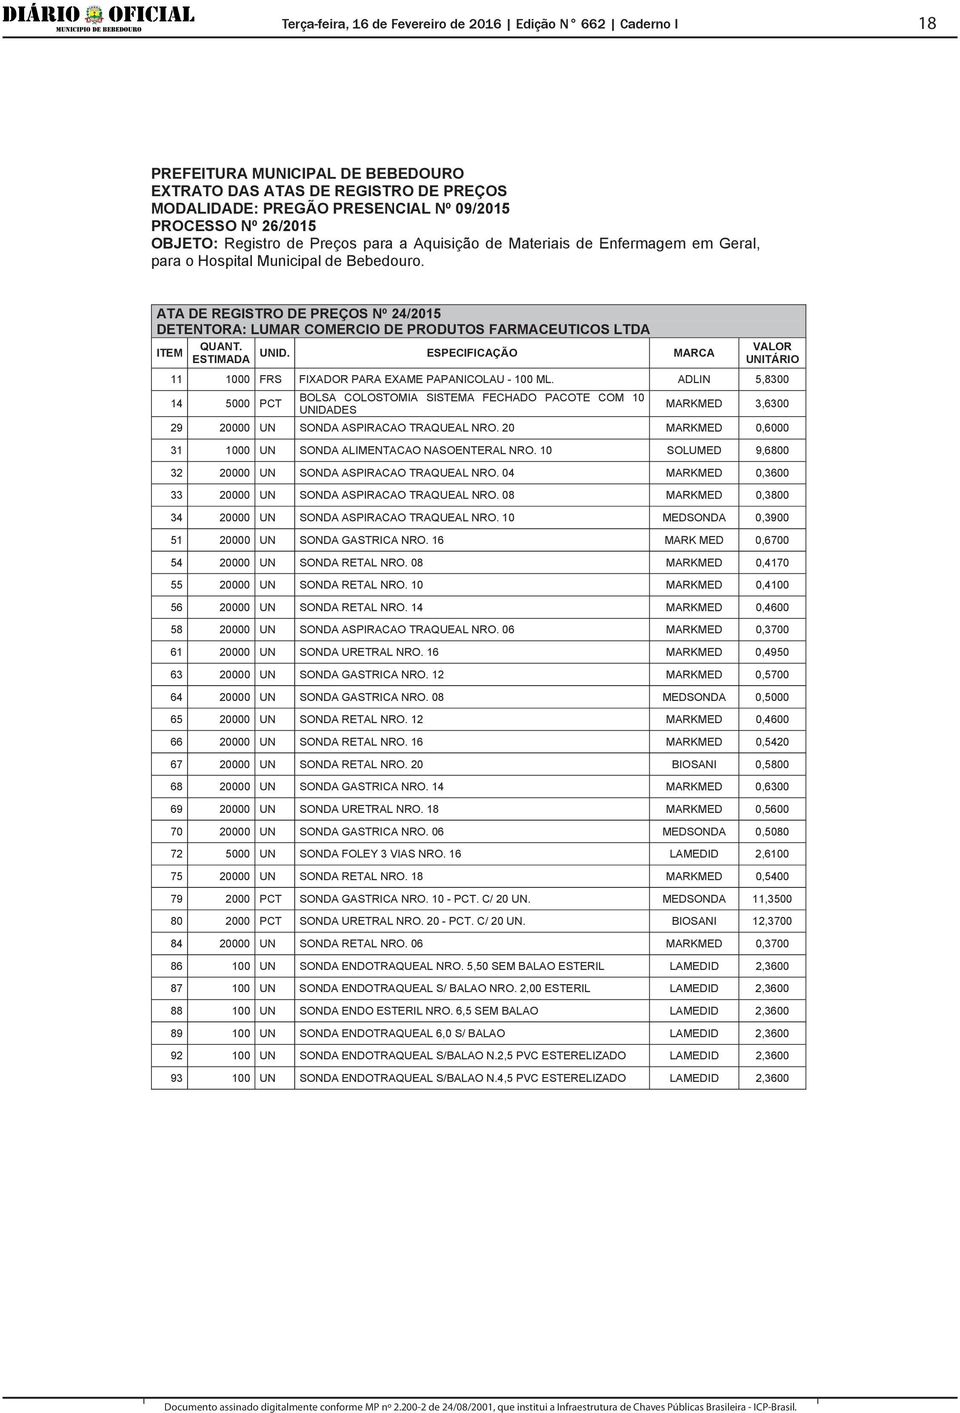 ATA DE REGISTRO DE PREÇOS Nº 24/2015 DETENTORA: LUMAR COMERCIO DE PRODUTOS FARMACEUTICOS LTDA 11 1000 FRS FIXADOR PARA EXAME PAPANICOLAU - 100 ML.